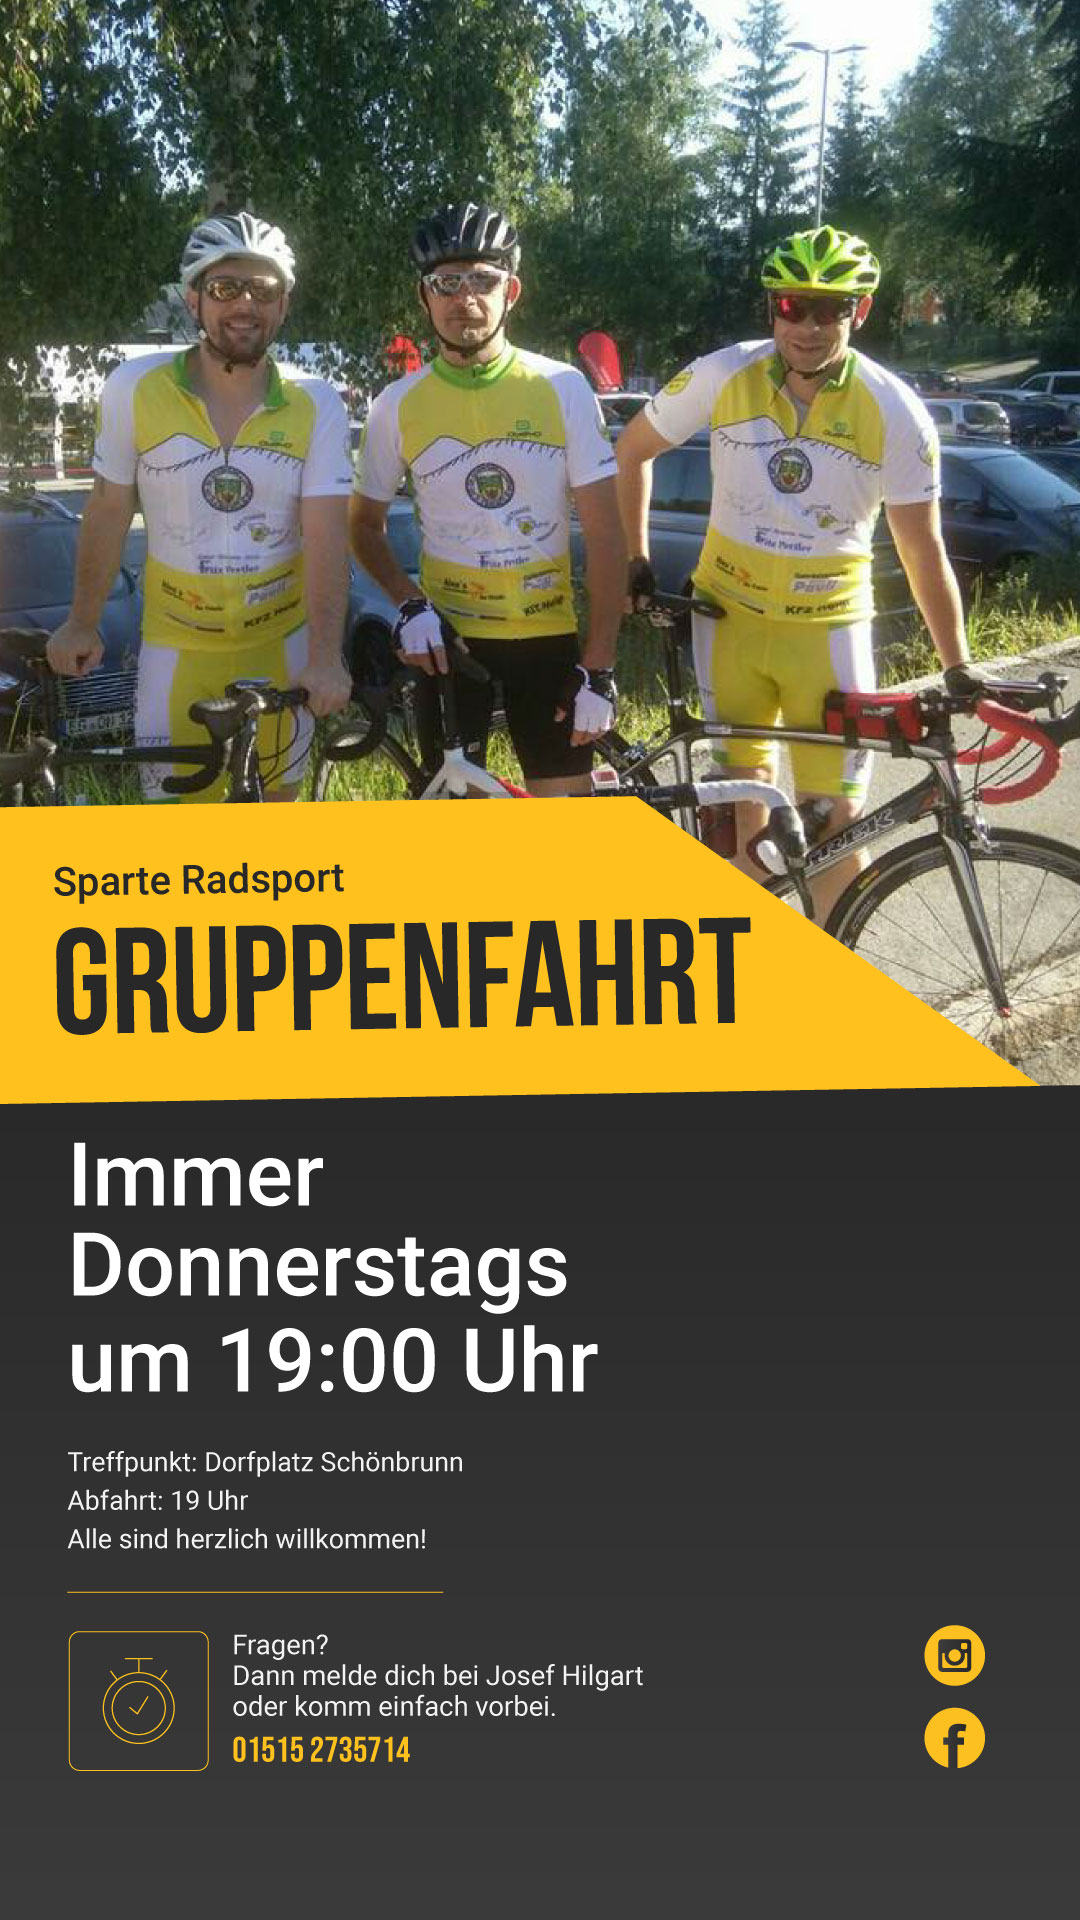 Radsport-Gruppenfahrt jeden Donnerstag ab 19 Uhr, Treffpunkt Dorfplatz Schönbrunn